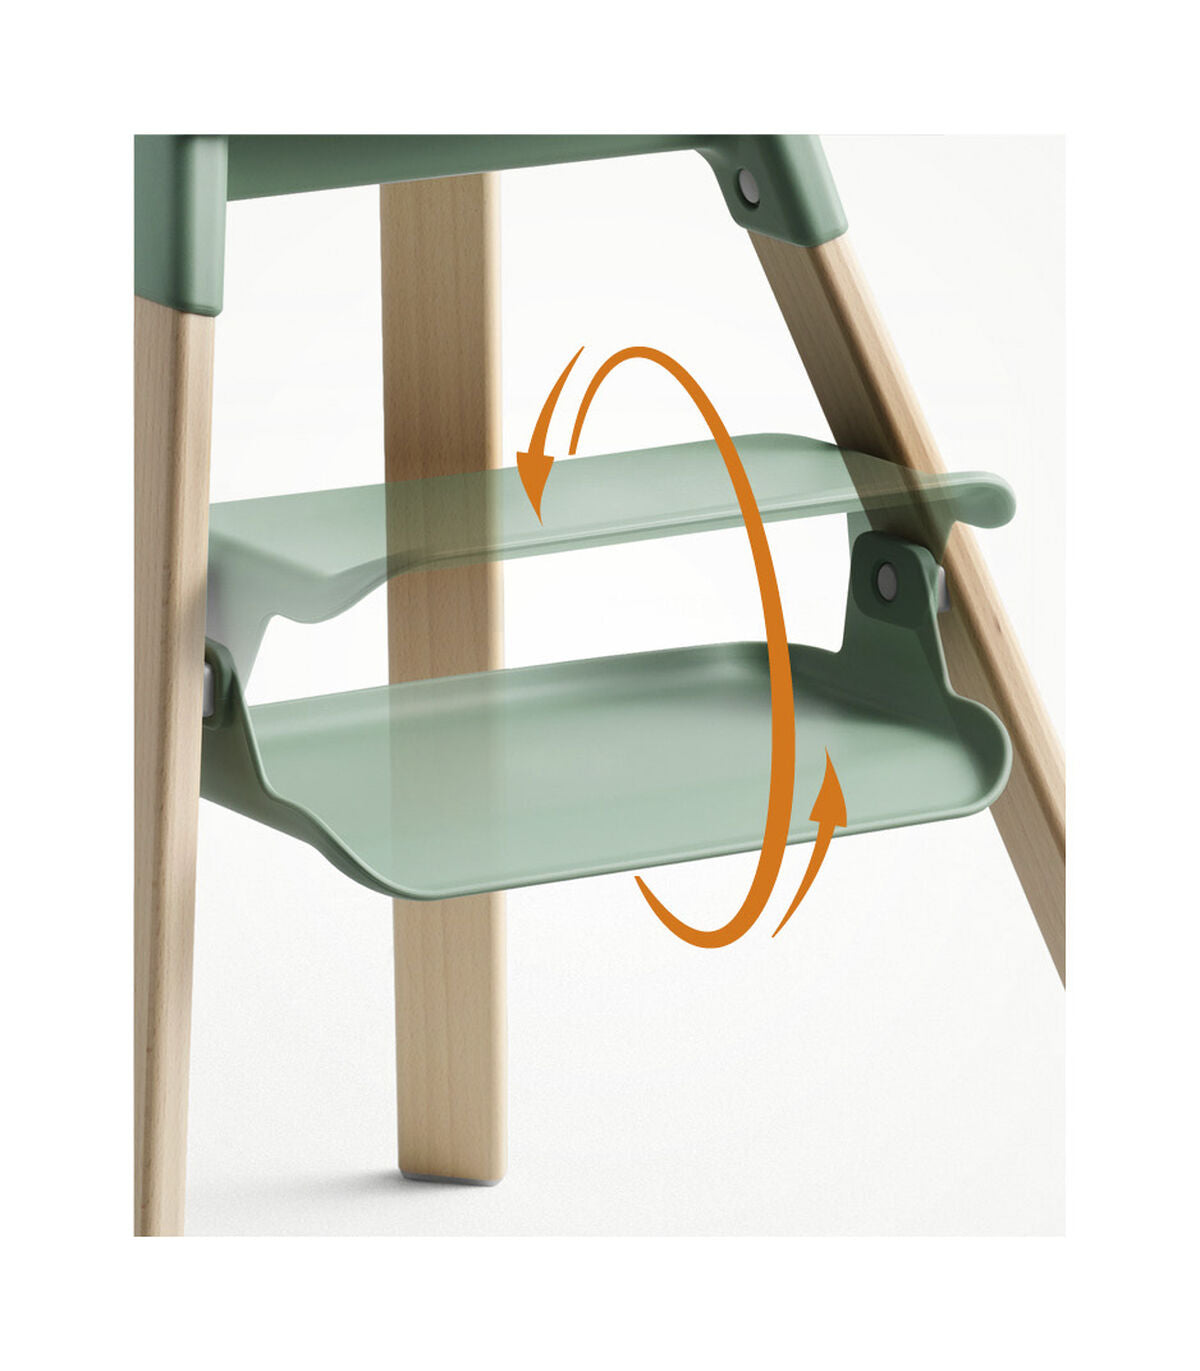 High Chair clover green Stokke® Clikk™